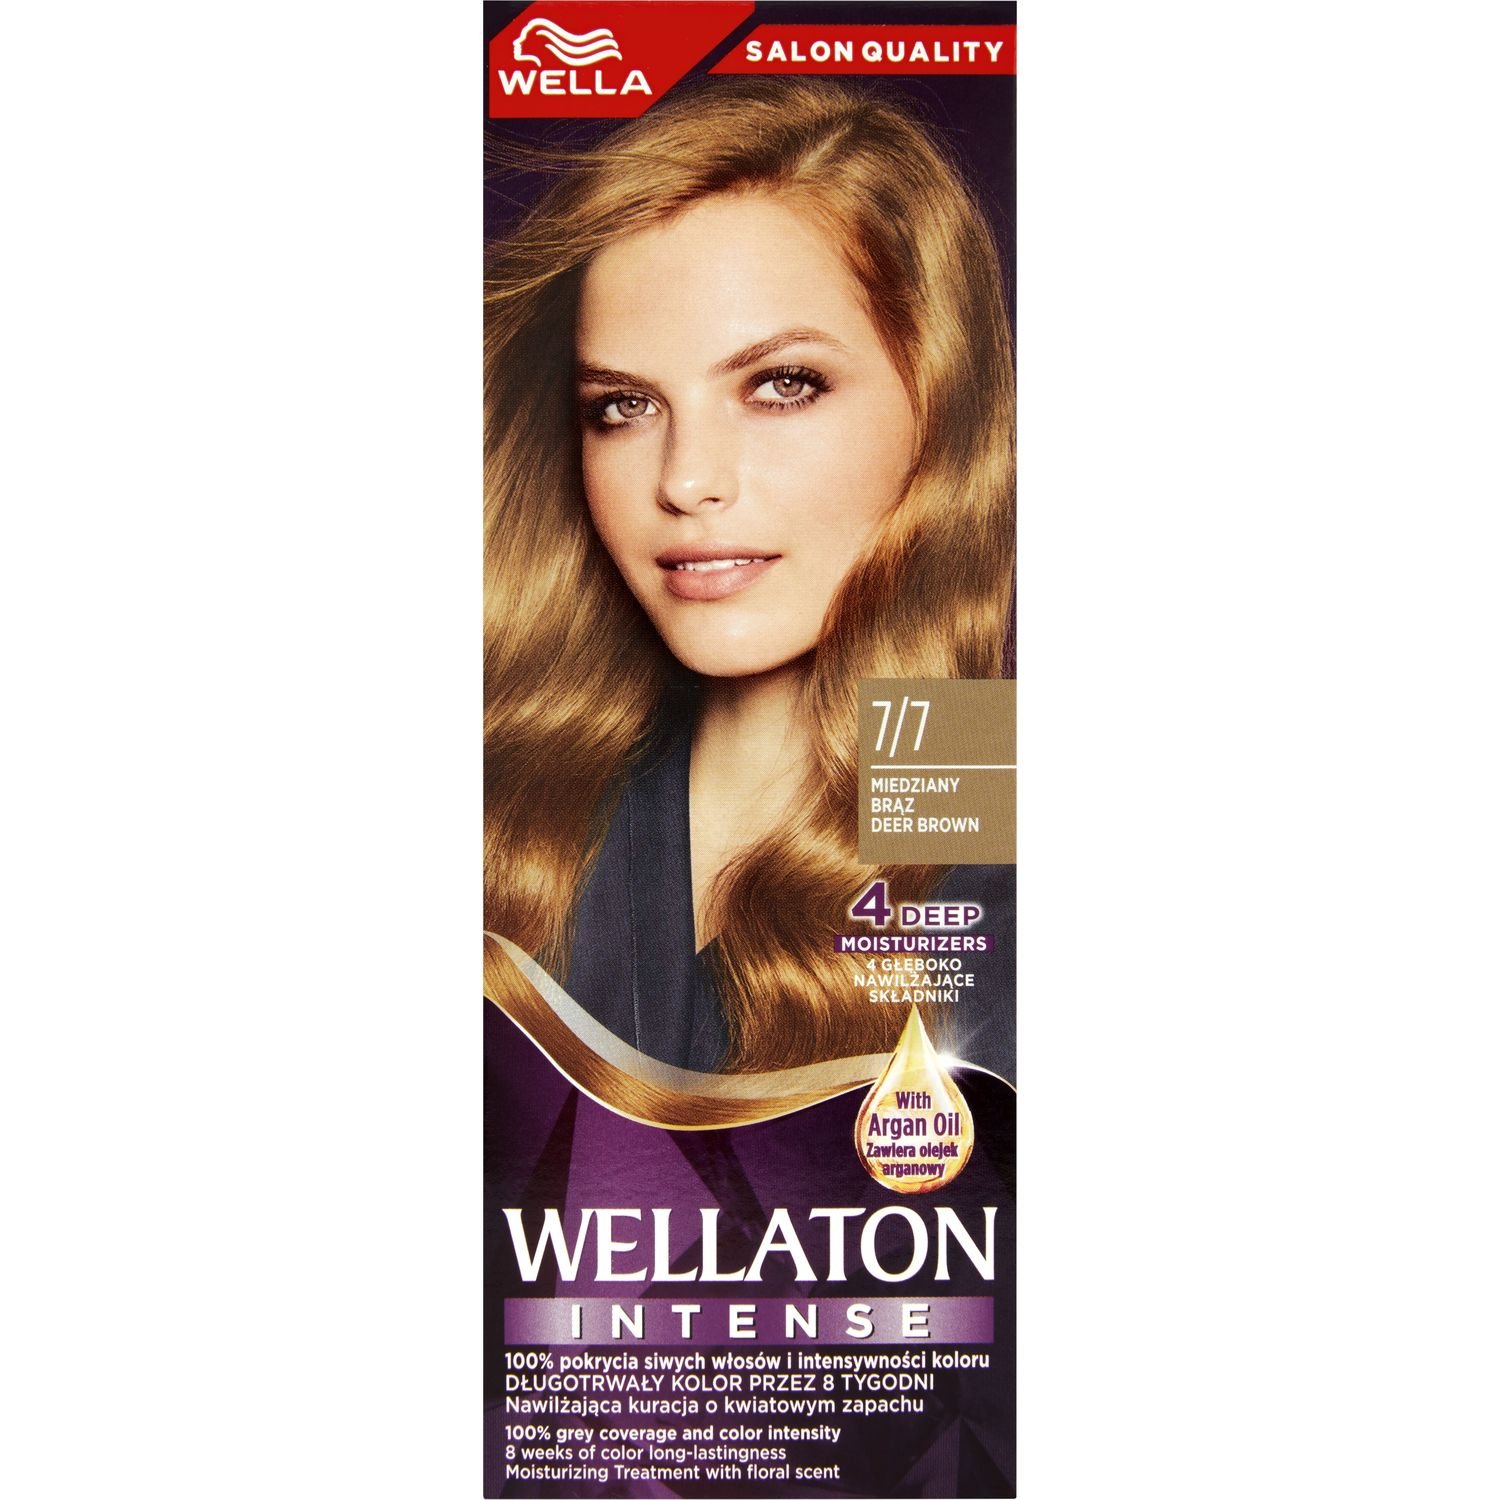 Интенсивная крем-краска для волос Wellaton, оттенок 7/7 (Карамельный шоколад), 110 мл - фото 2